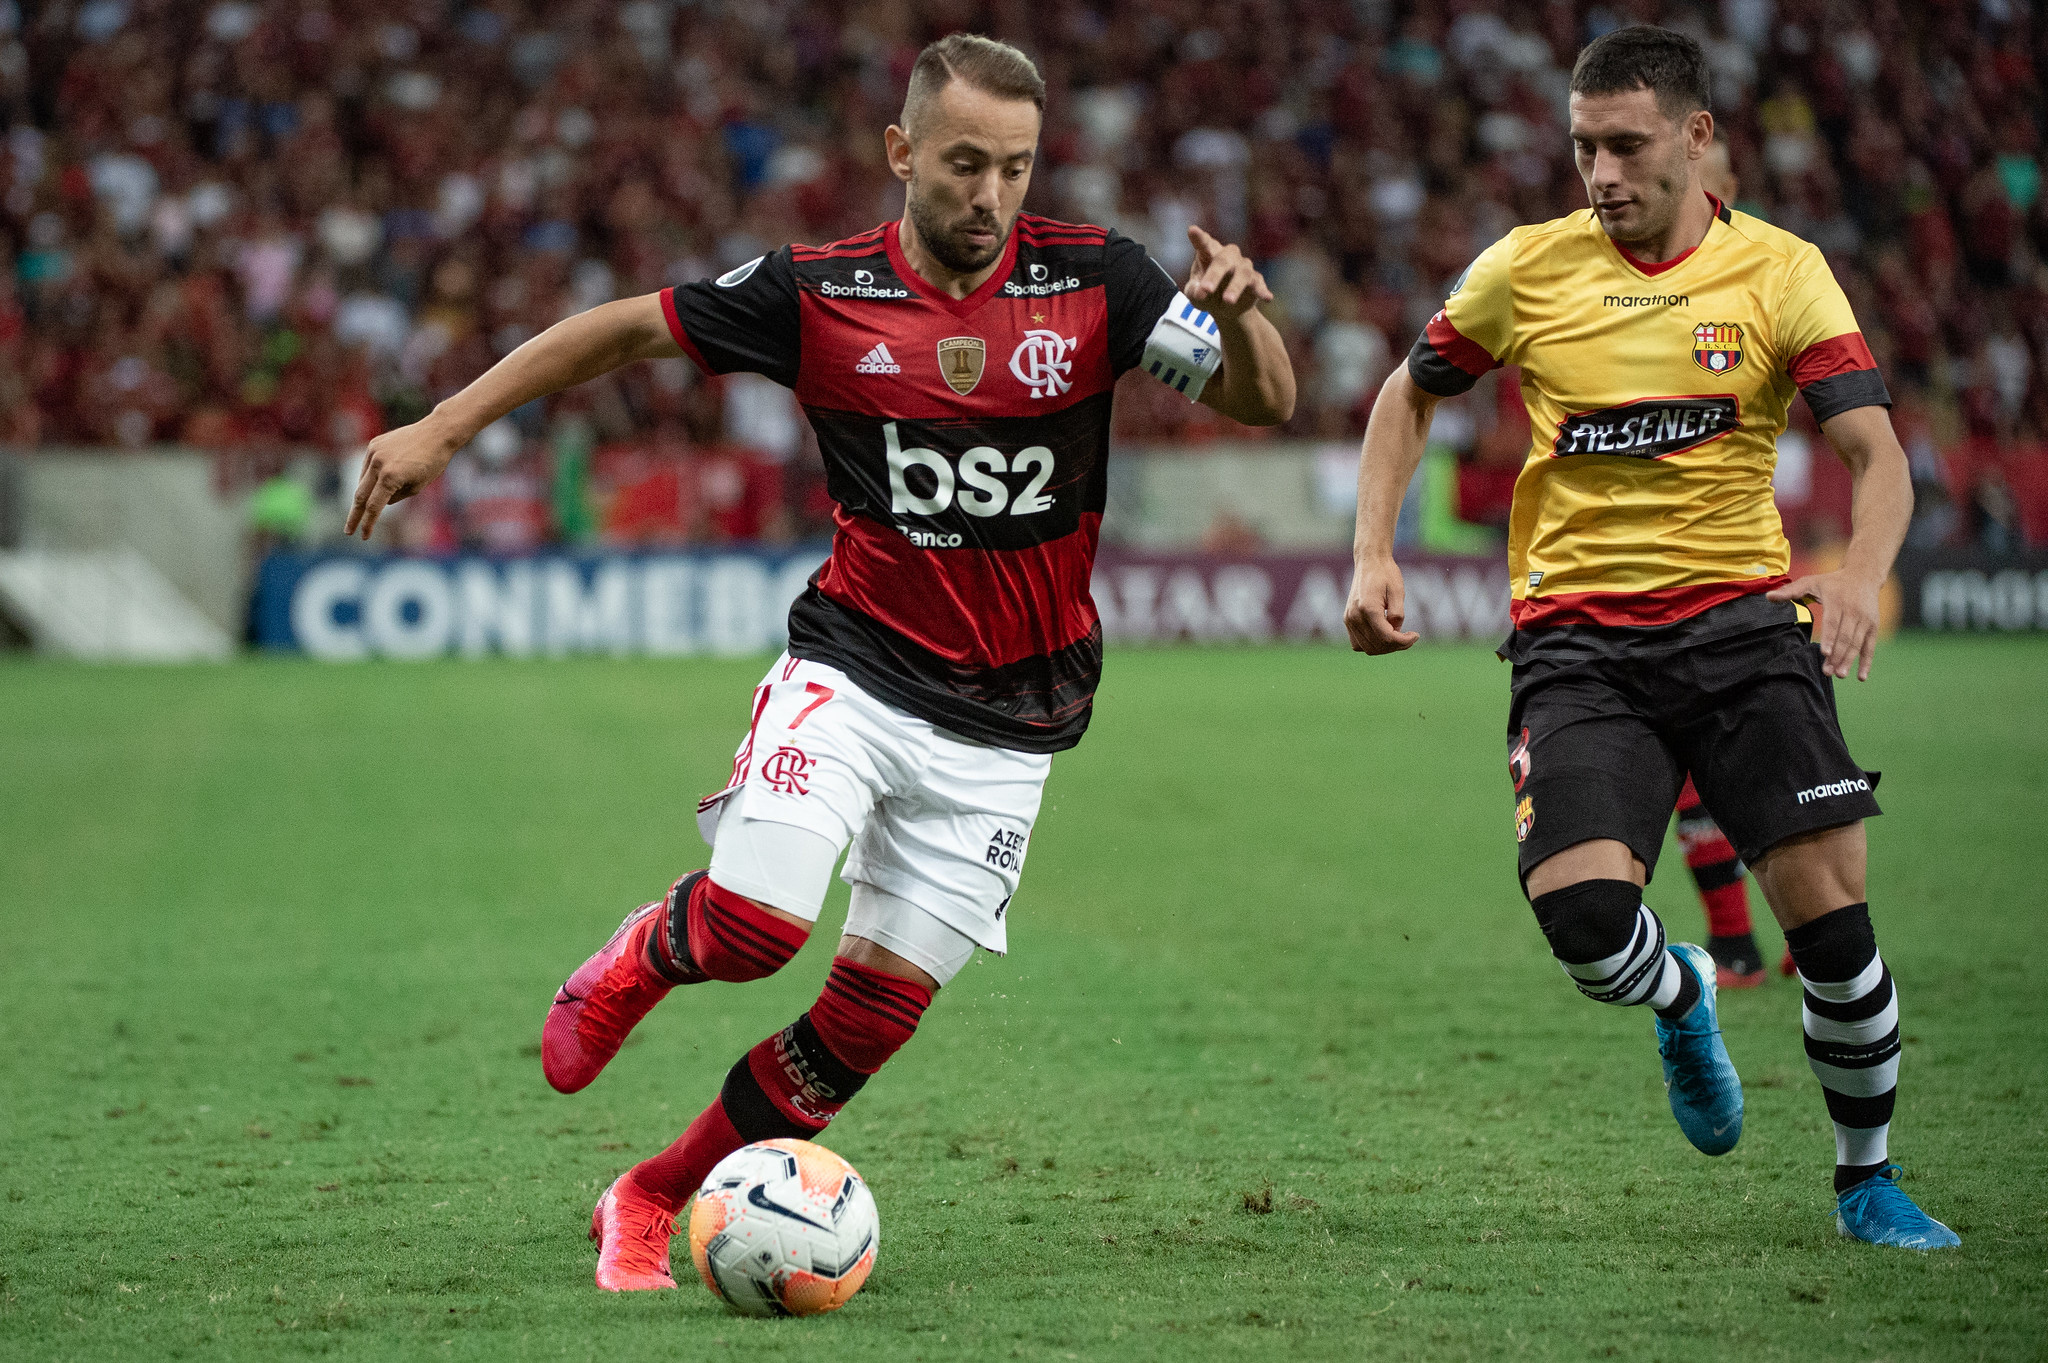 Meia: Everton Ribeiro (Flamengo) - 6,5 Milhões de euros 